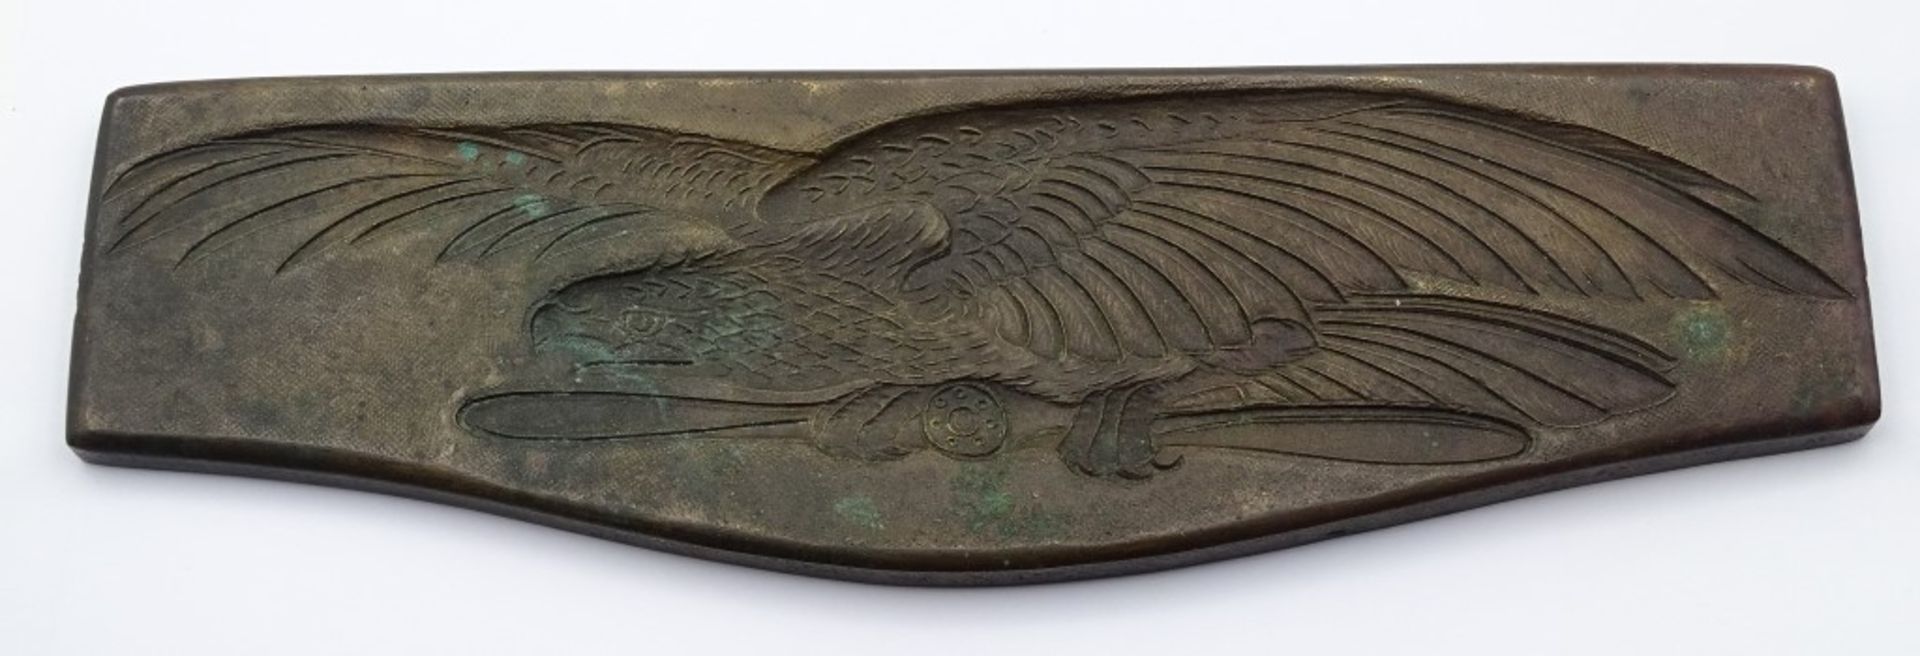 Schwere Bronze Plakette mit Adler Motiv,L- 25,5cm